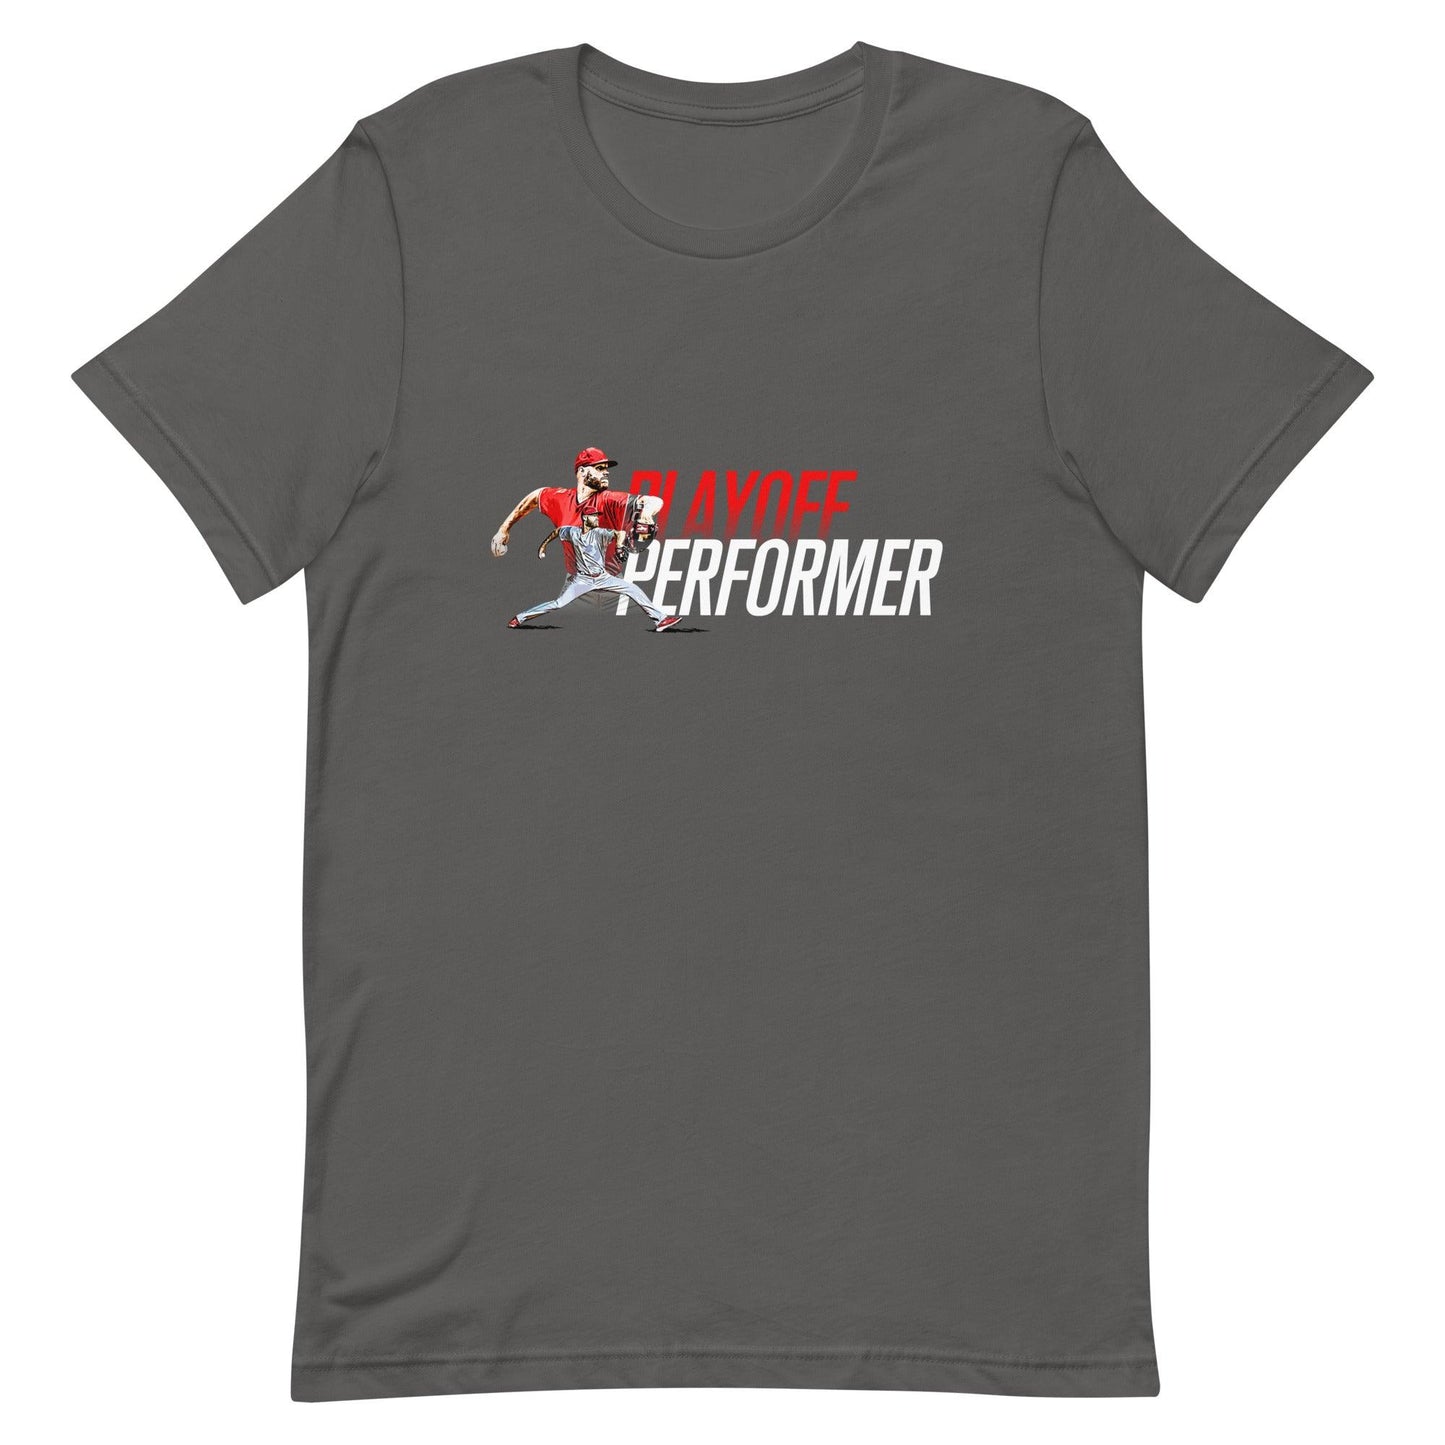 Zack Wheeler "Playoff Performer" t-shirt - Fan Arch